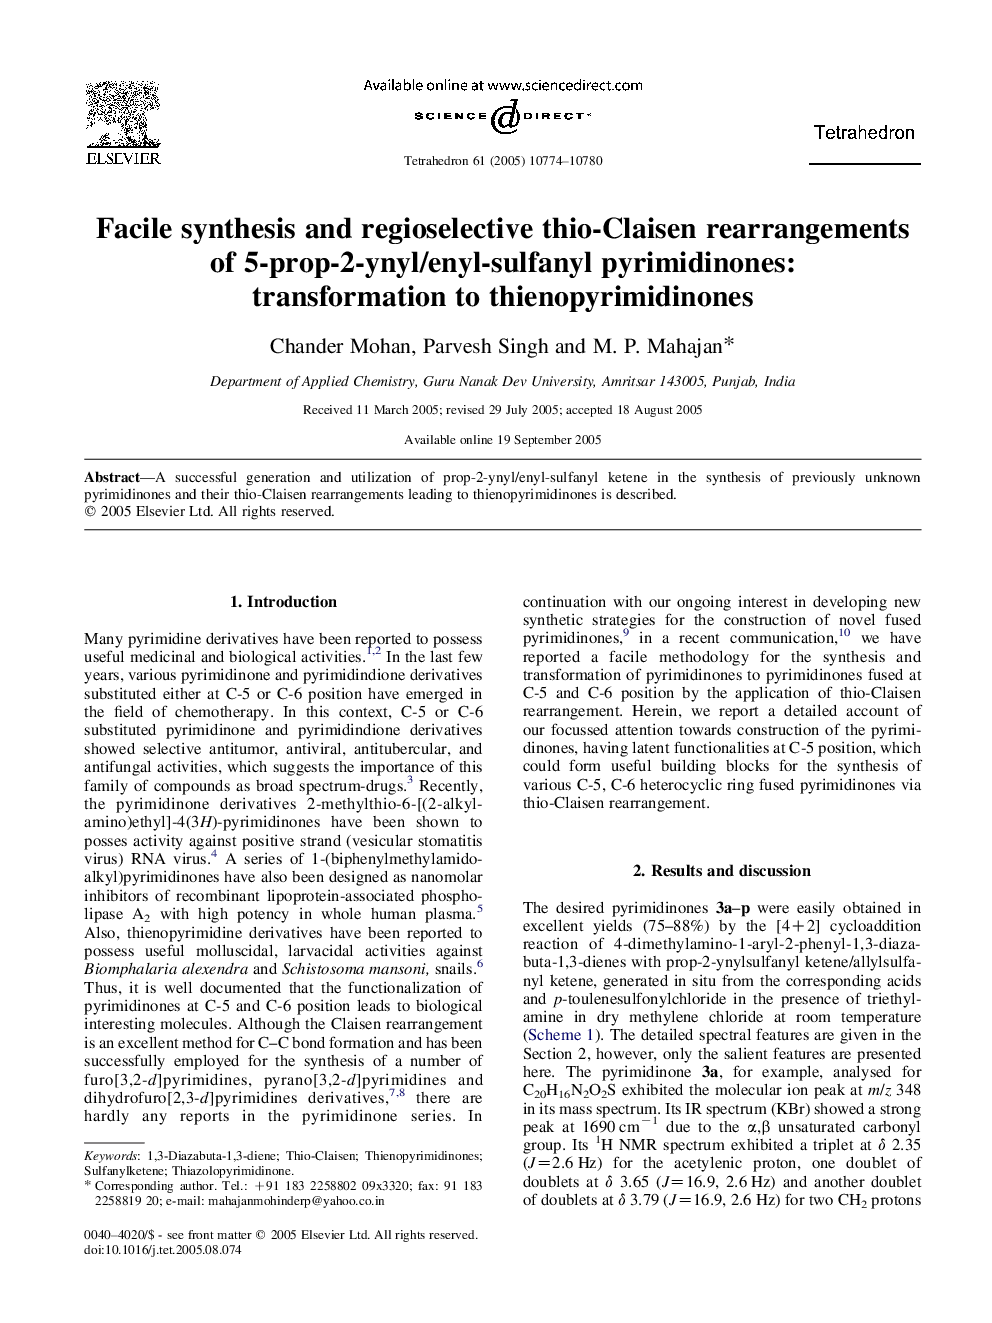 Facile synthesis and regioselective thio-Claisen rearrangements of 5-prop-2-ynyl/enyl-sulfanyl pyrimidinones: transformation to thienopyrimidinones